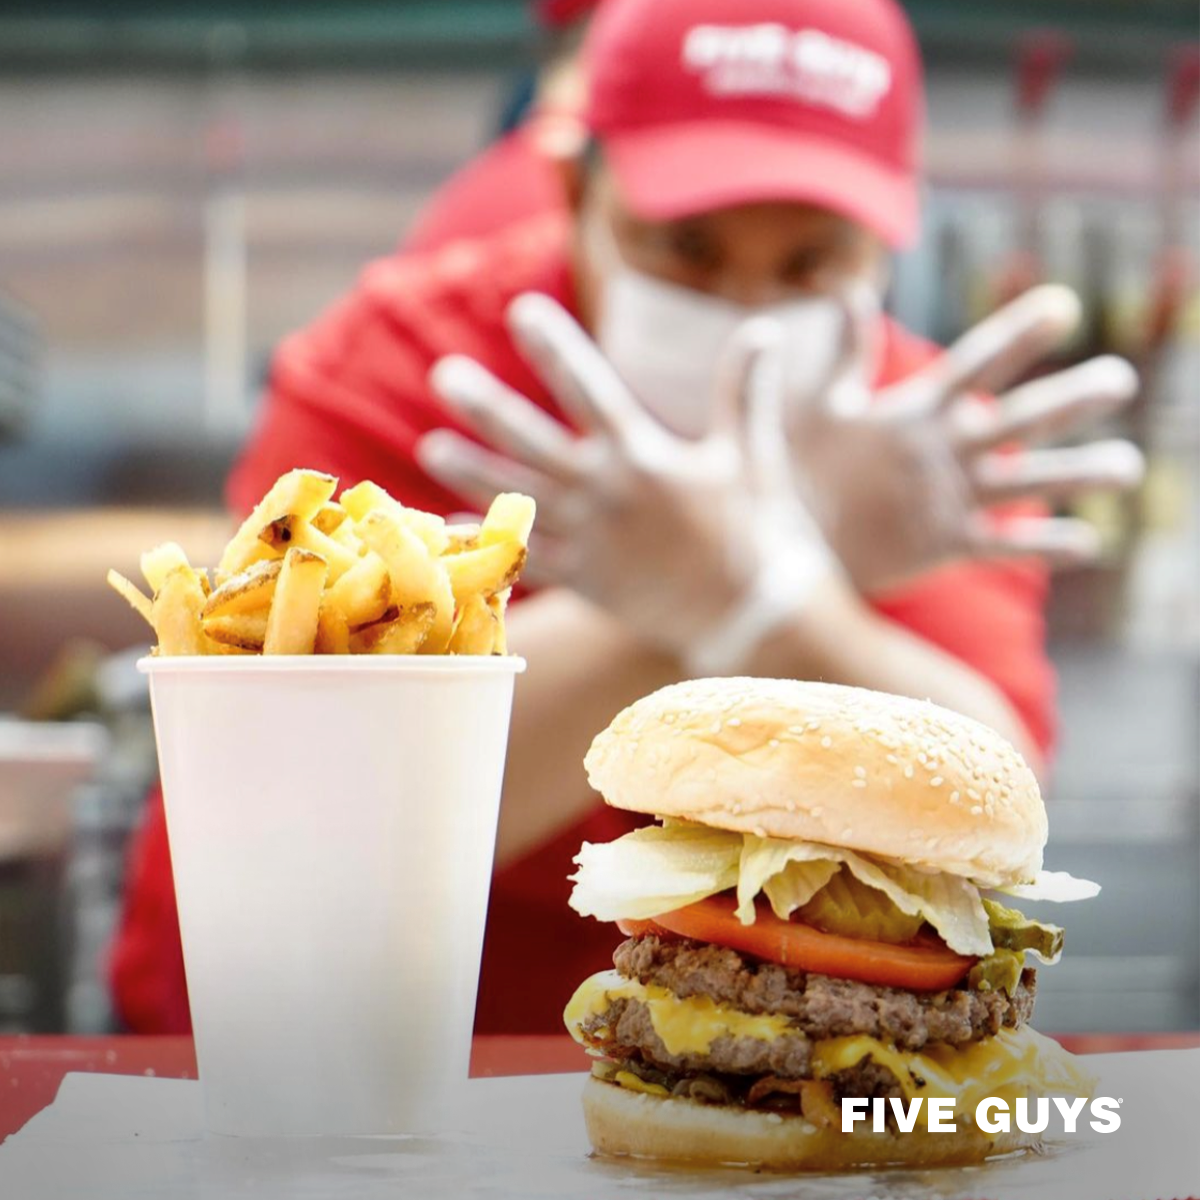 hamburguesa elaborada con la calidad de la marca Five boys